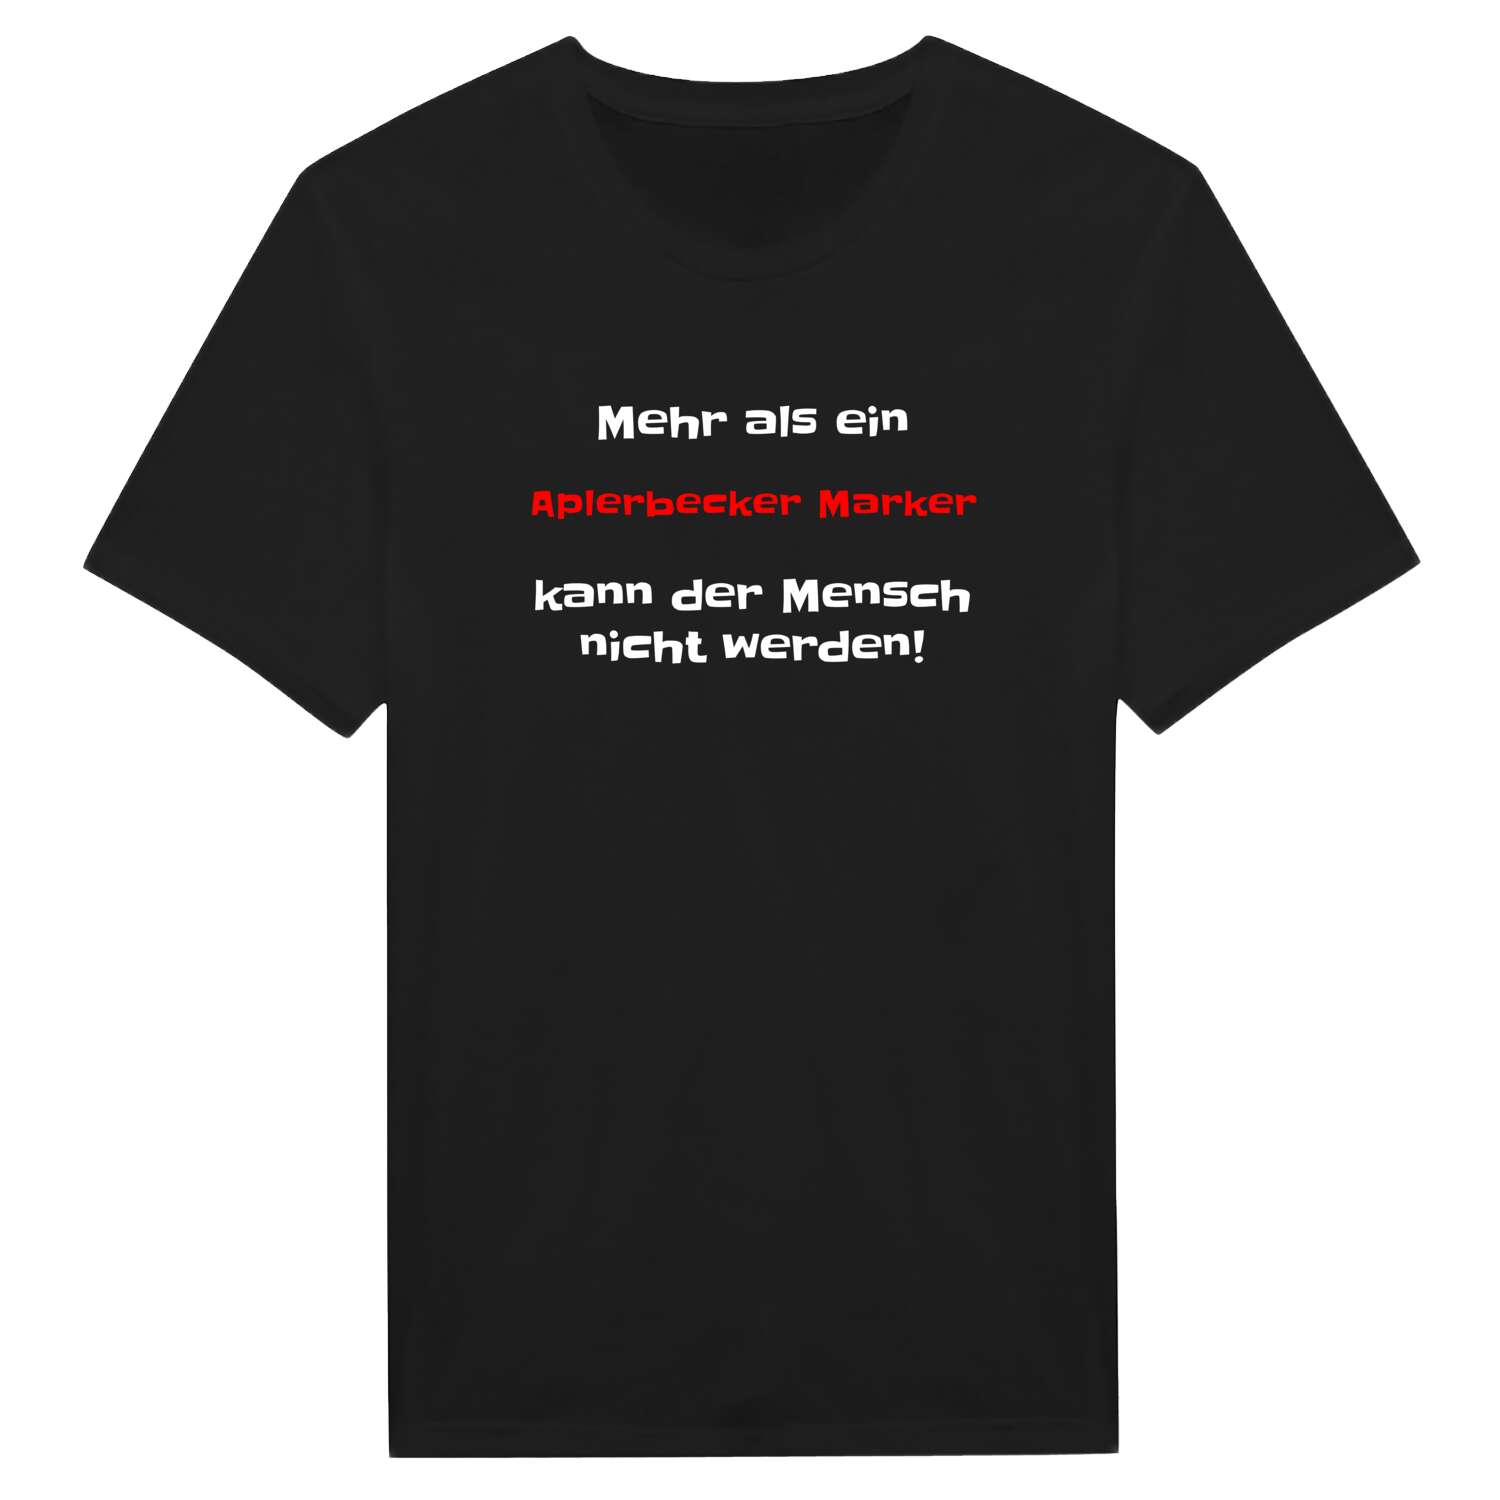 Aplerbecker Mark T-Shirt »Mehr als ein«